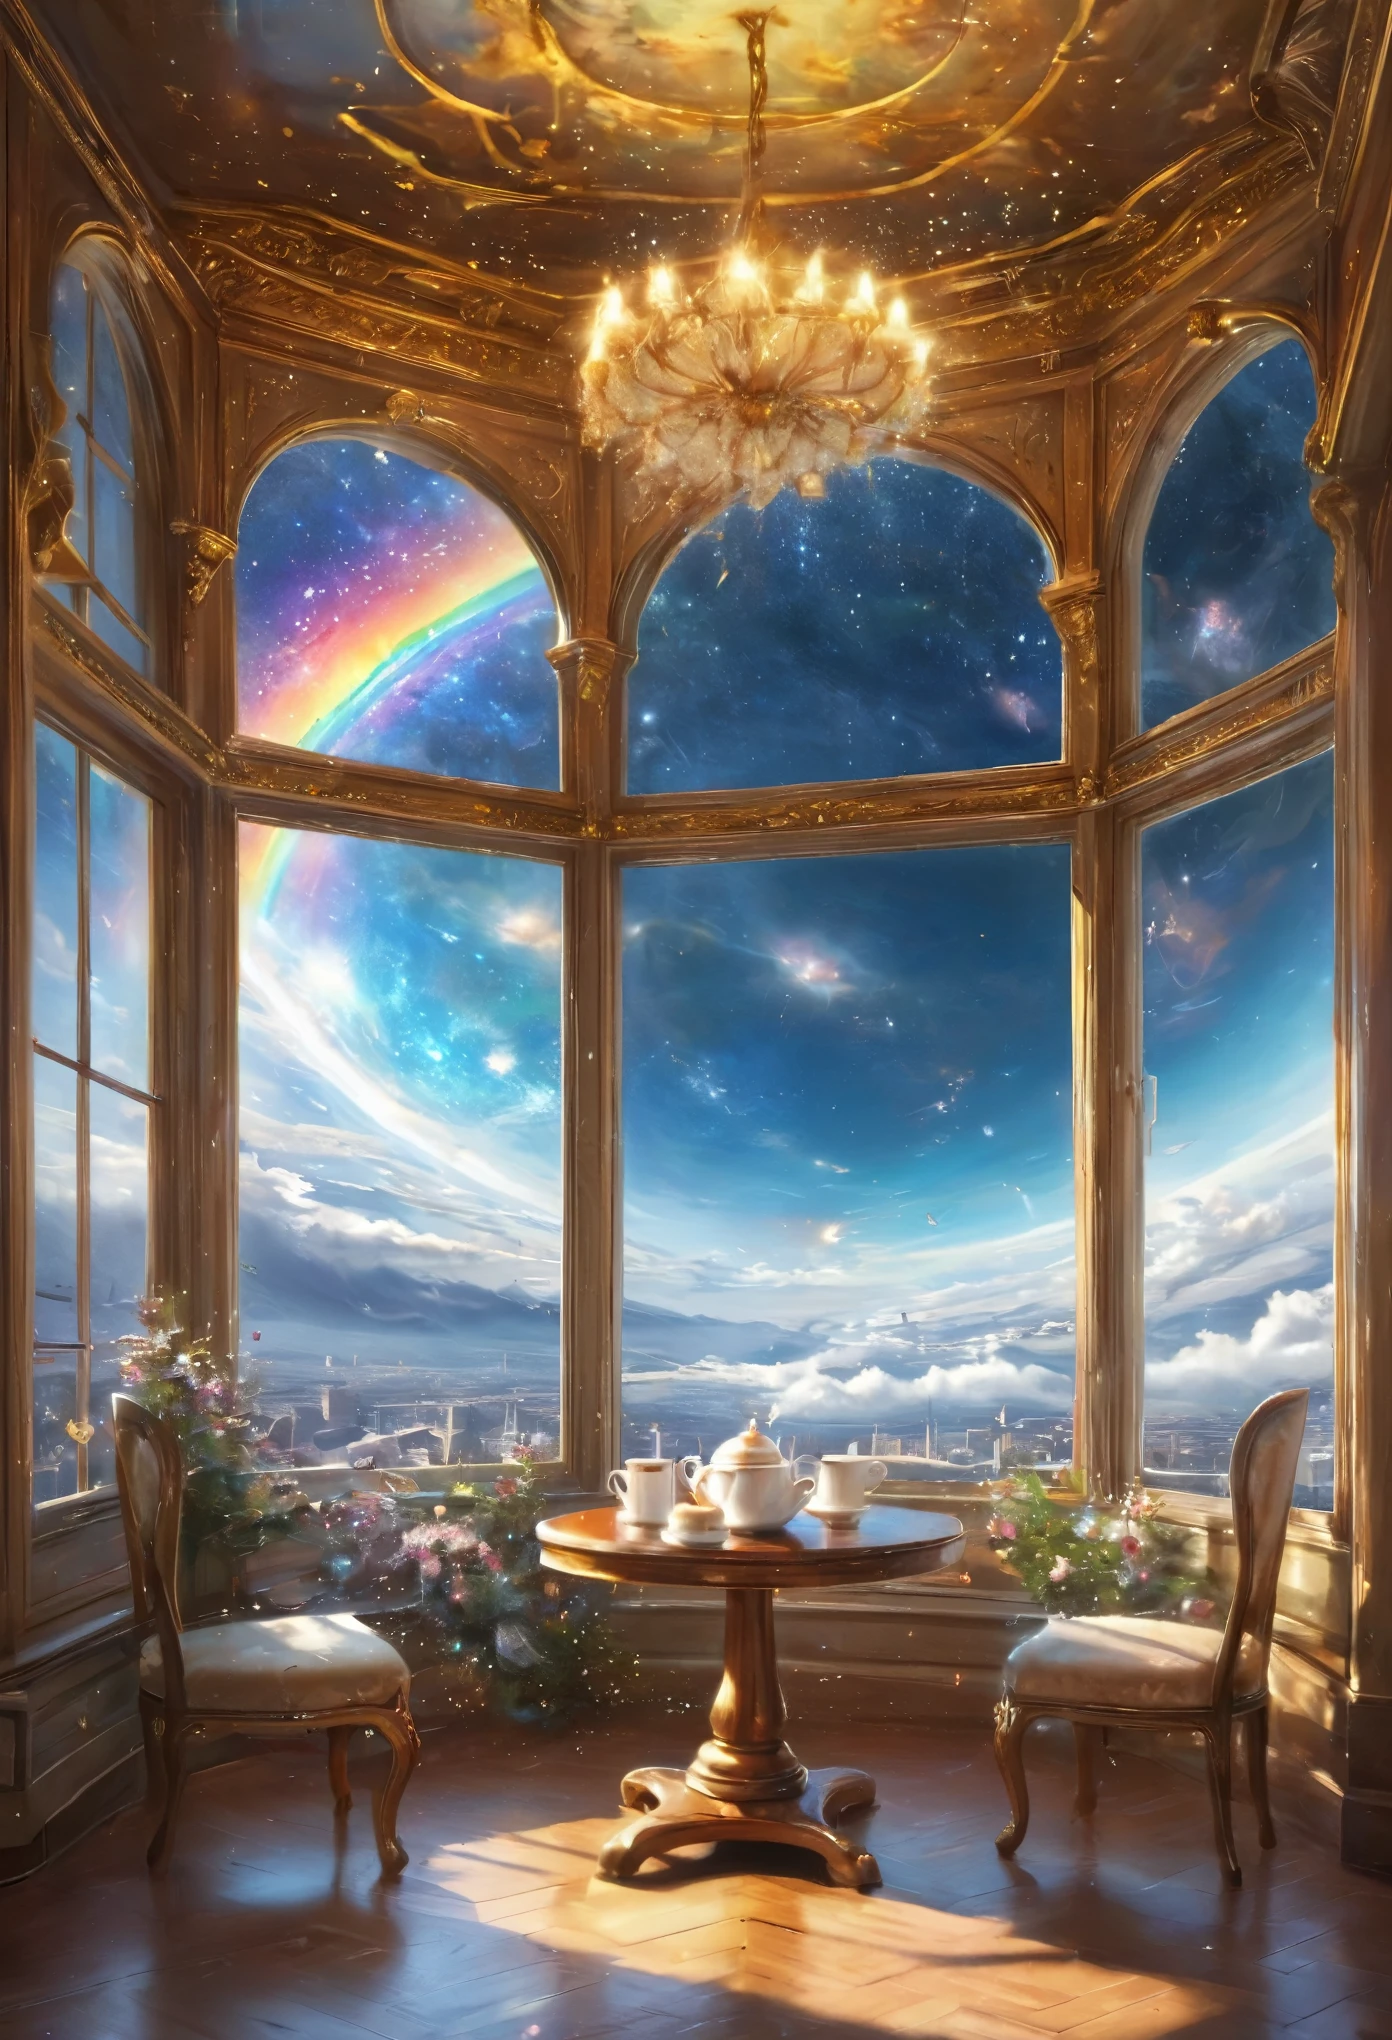 宇宙のカフェ、美しい天使が白いアンティーク調の椅子に座って紅茶を飲んでいます、宇宙、星、素晴らしい満月、窓、ティーカップ、ケーキ、明るい、素晴らしい、美しい、傑作、惑星、天国、レインボーライト、平和、完璧な照明、Shining with the sacredness of 天国ly splendor、素晴らしい輝き、光の微粒子